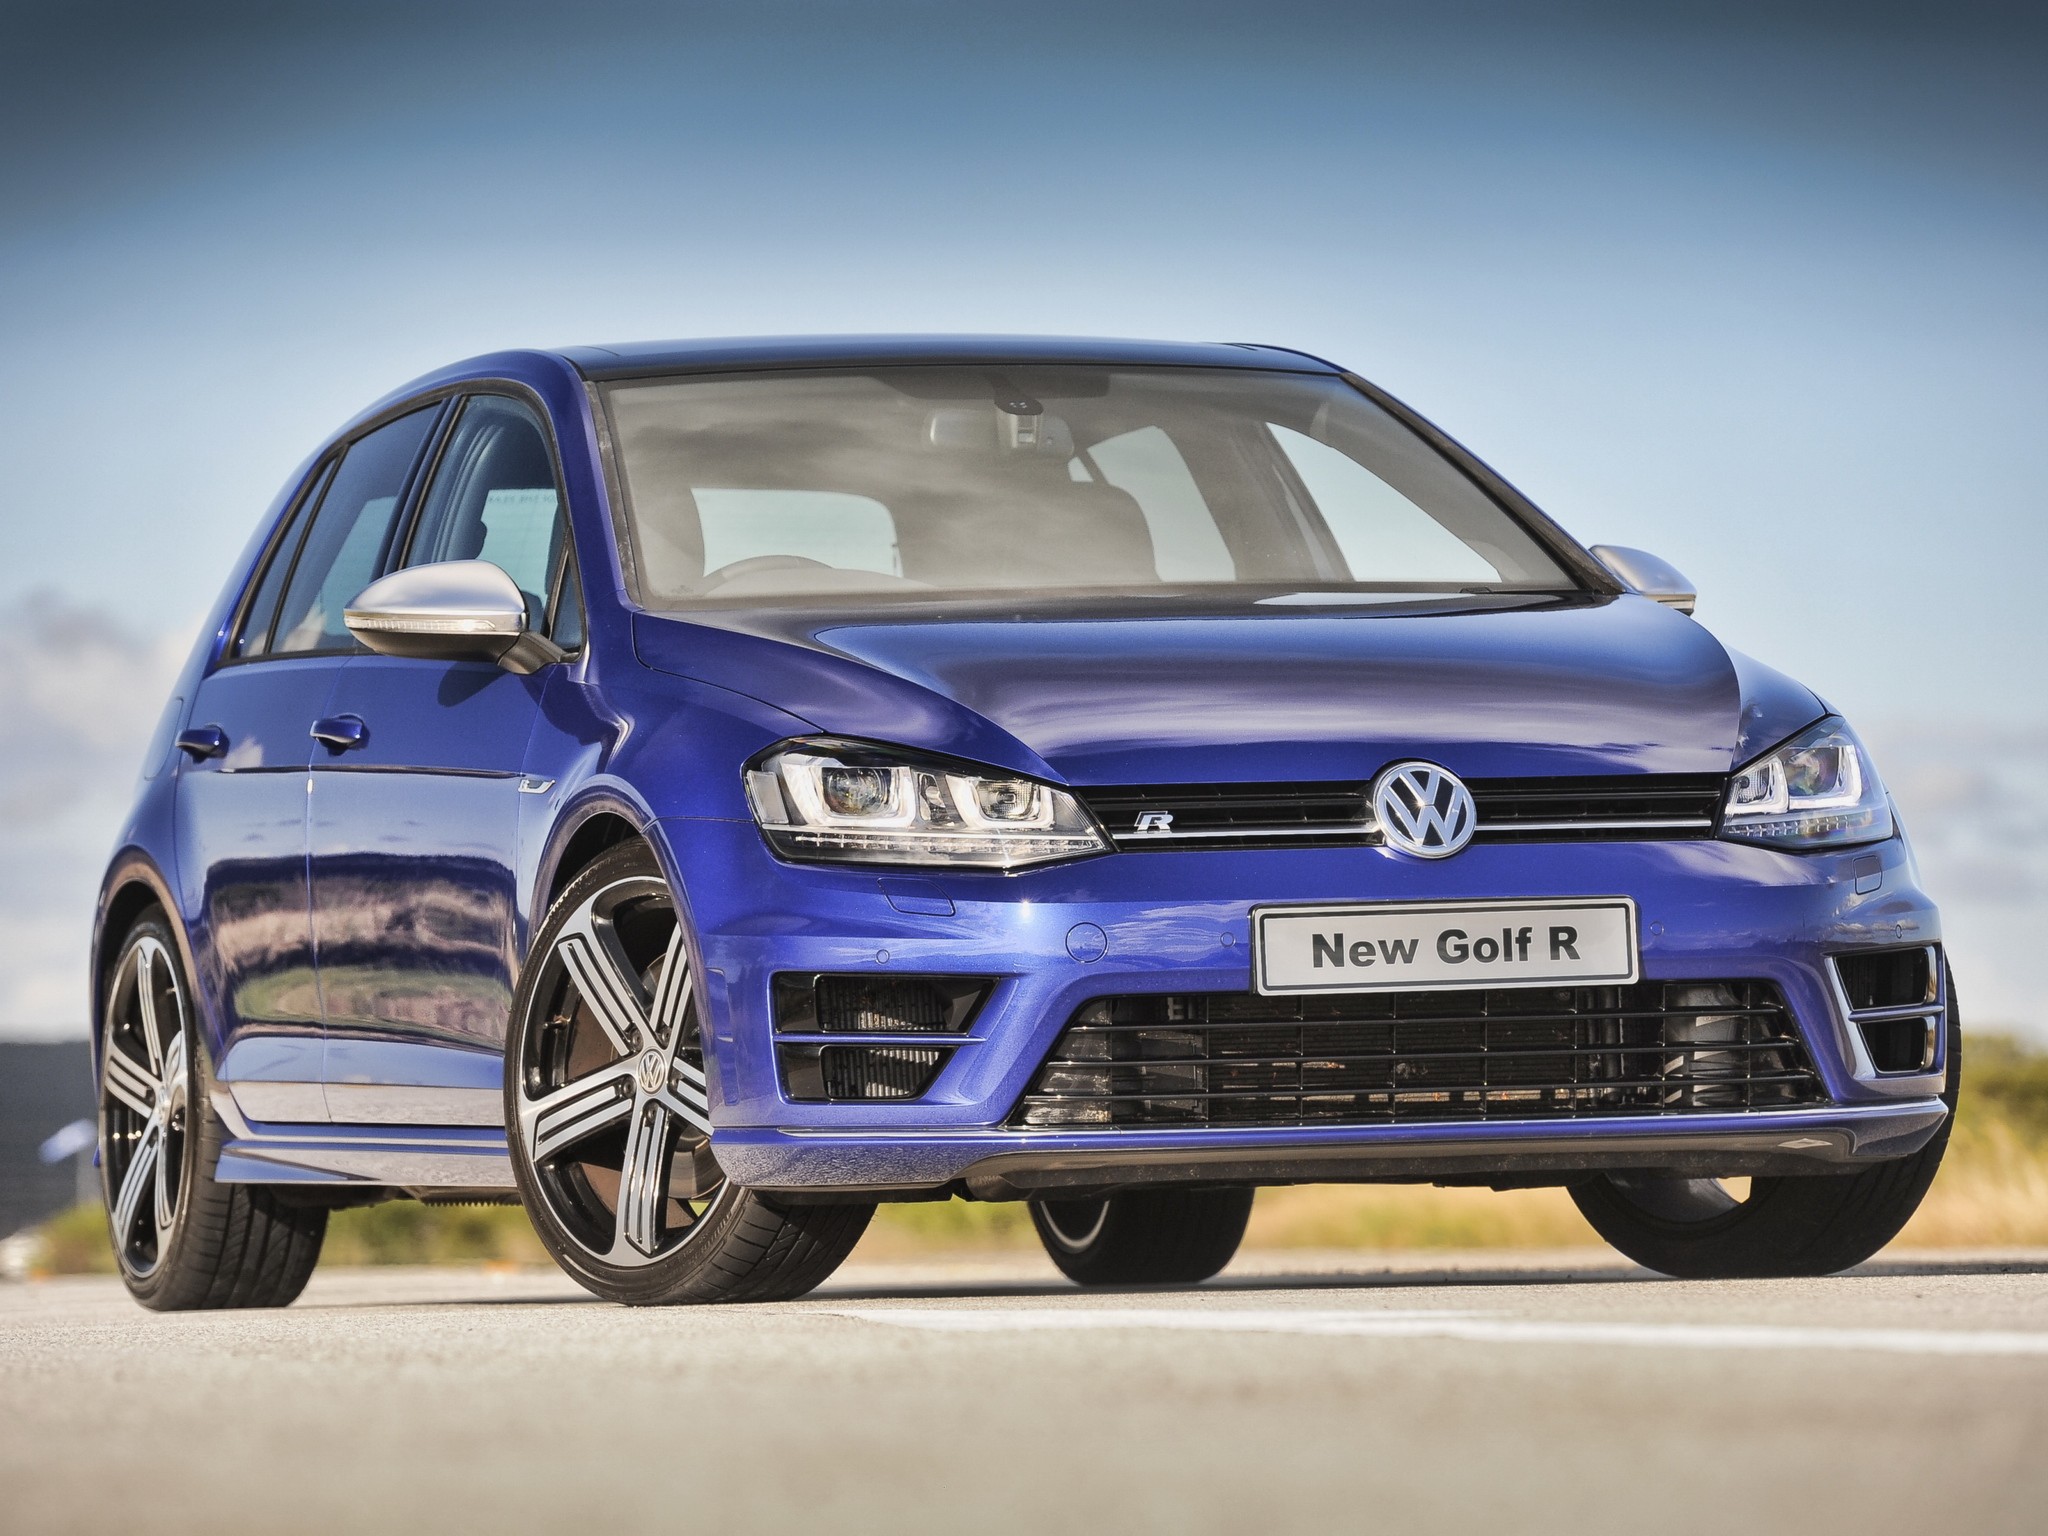 2013 Volkswagen Golf VII R - 5 Doors Specs & Photos - autoevolution